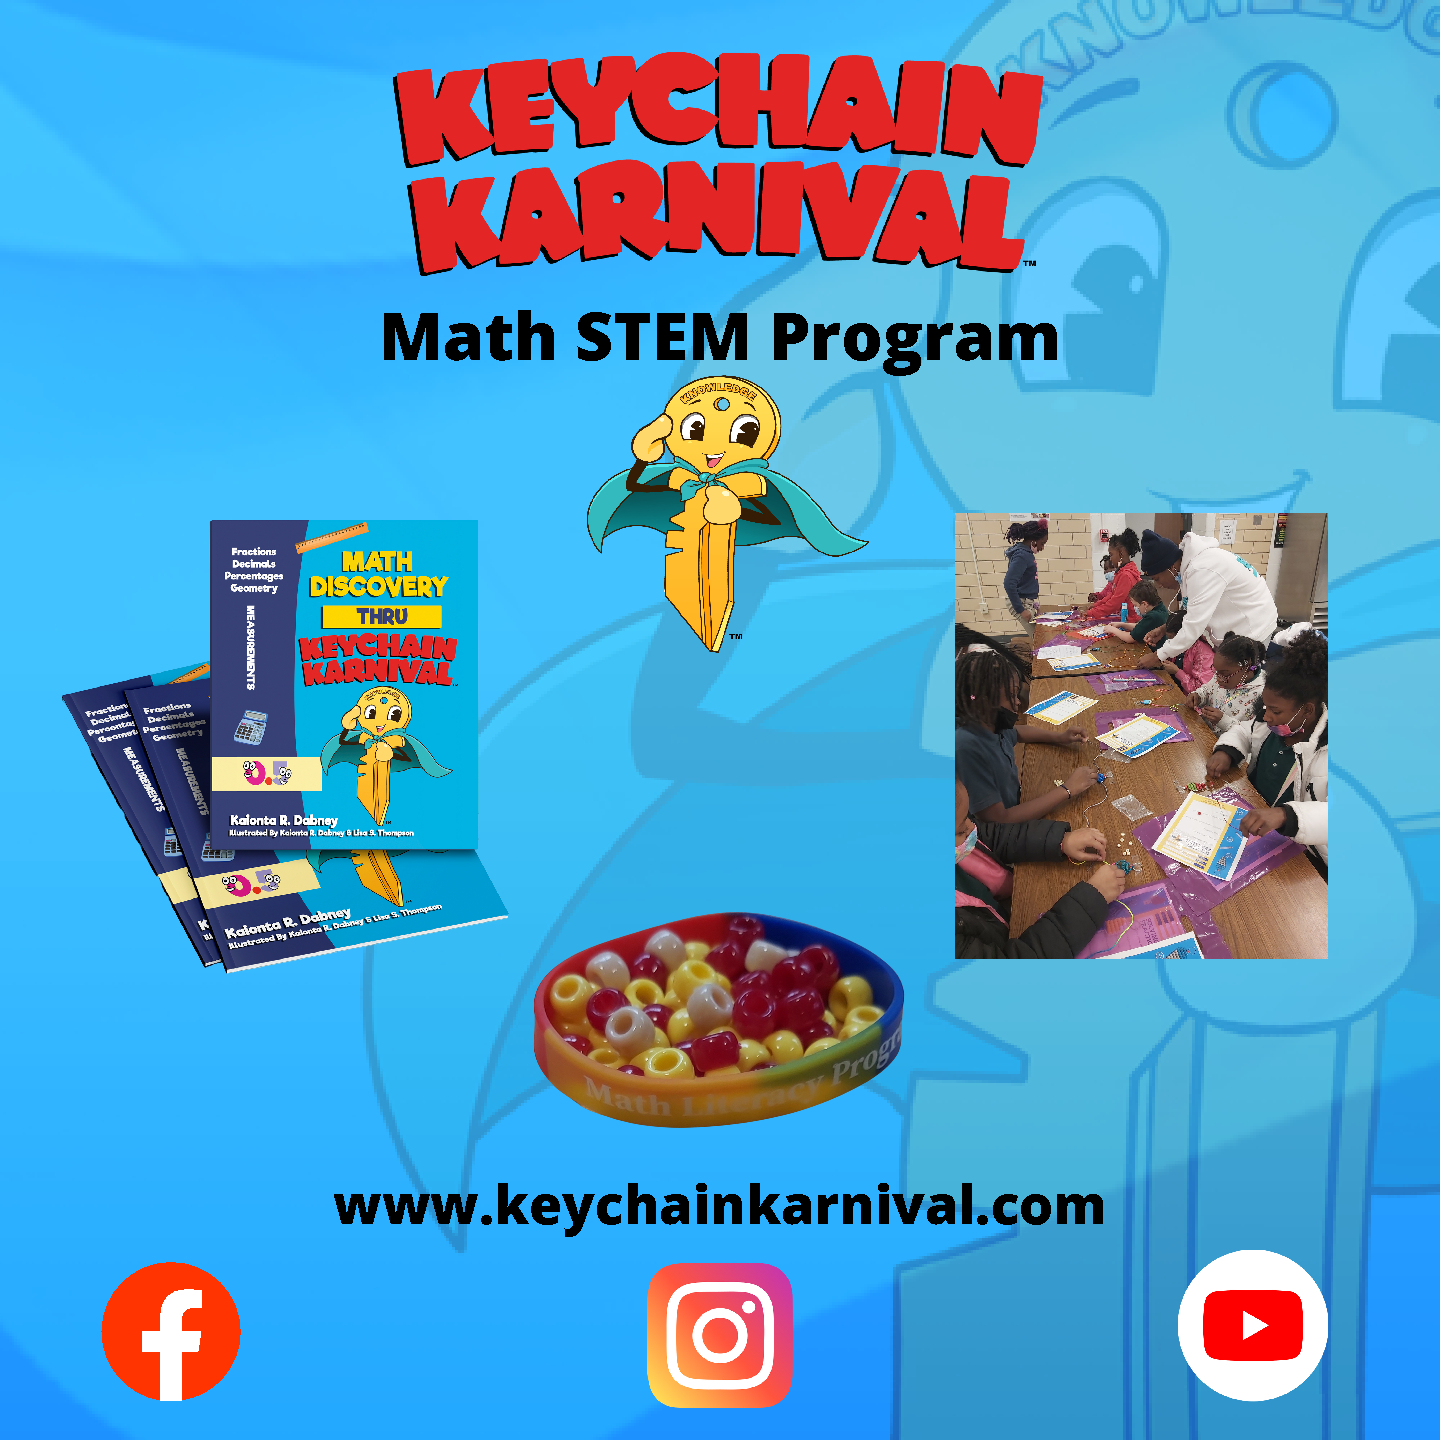 Keychain Karnival Math STEM Program